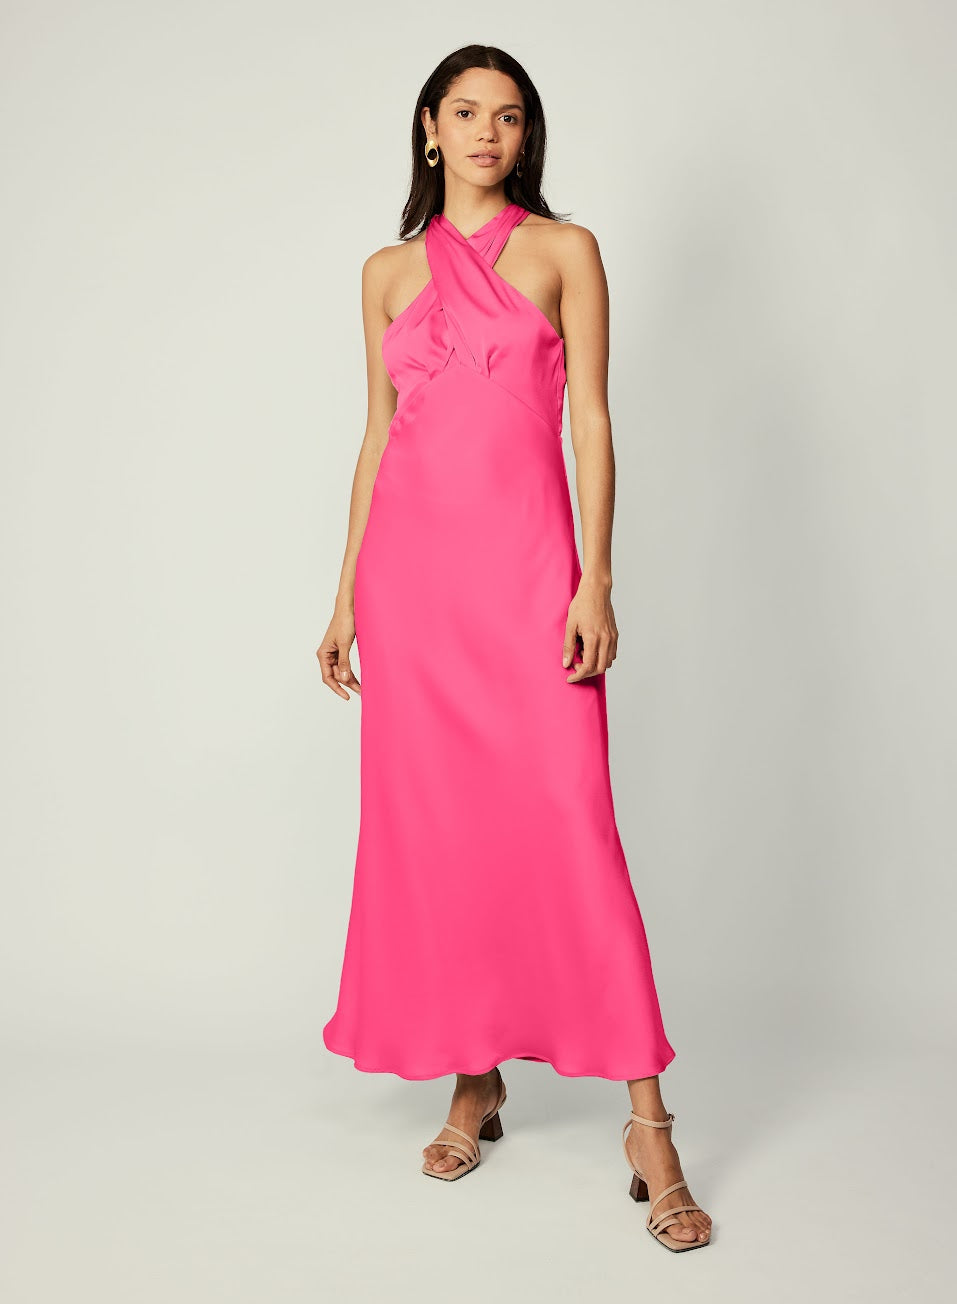 ESMAEÈ - Paris Dress (Pink)